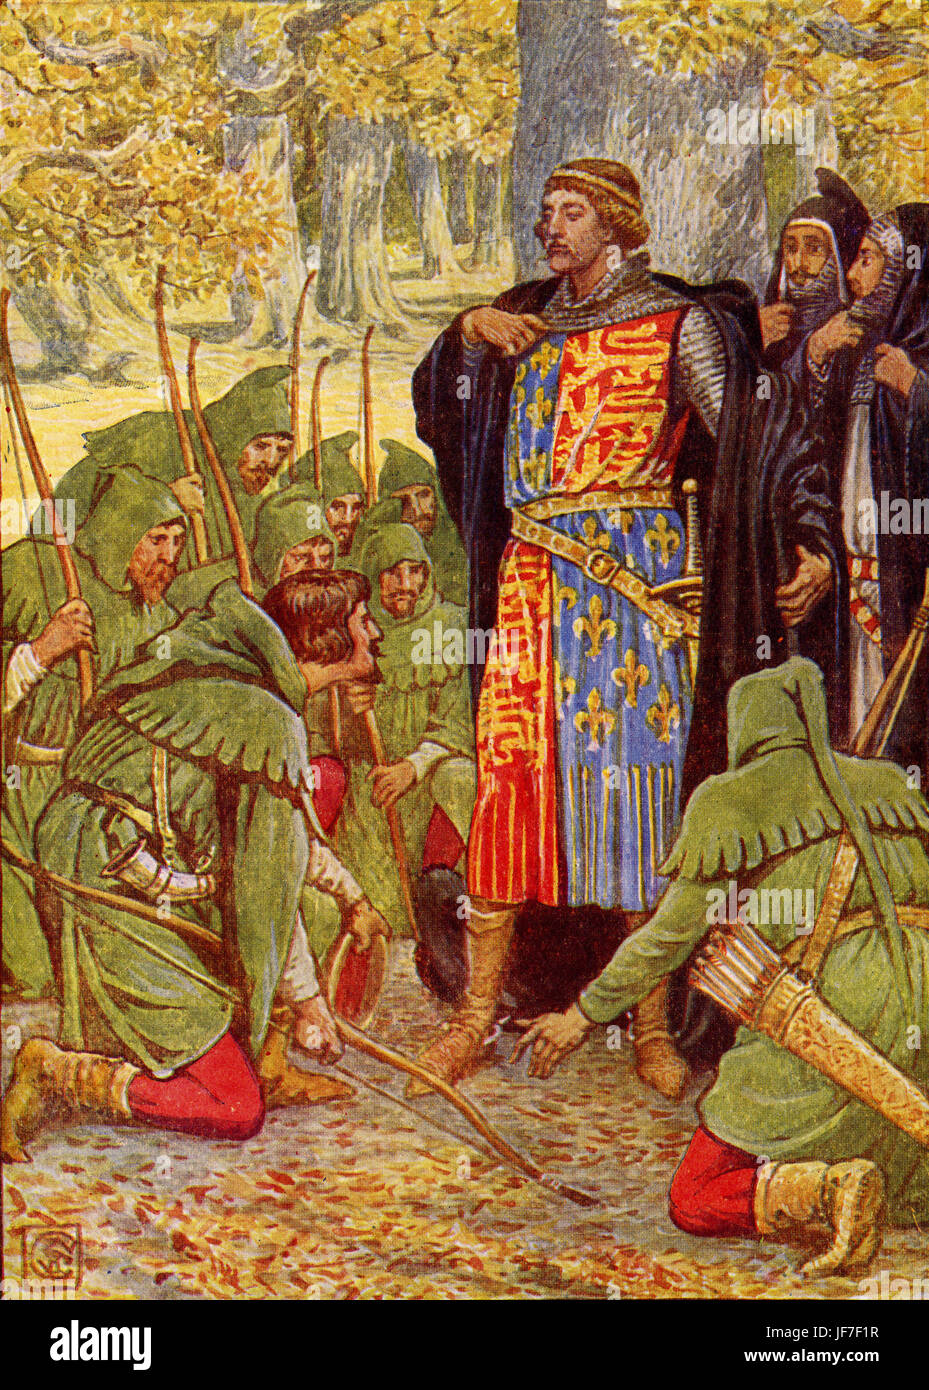 Robin Hood und die Männer von der Greenwood von Henry Gilbert. Bildunterschrift lautet: "Robin Hood und seine Männer Knien an den König". Illustriert von Walter Crane. C.1912 Stockfoto